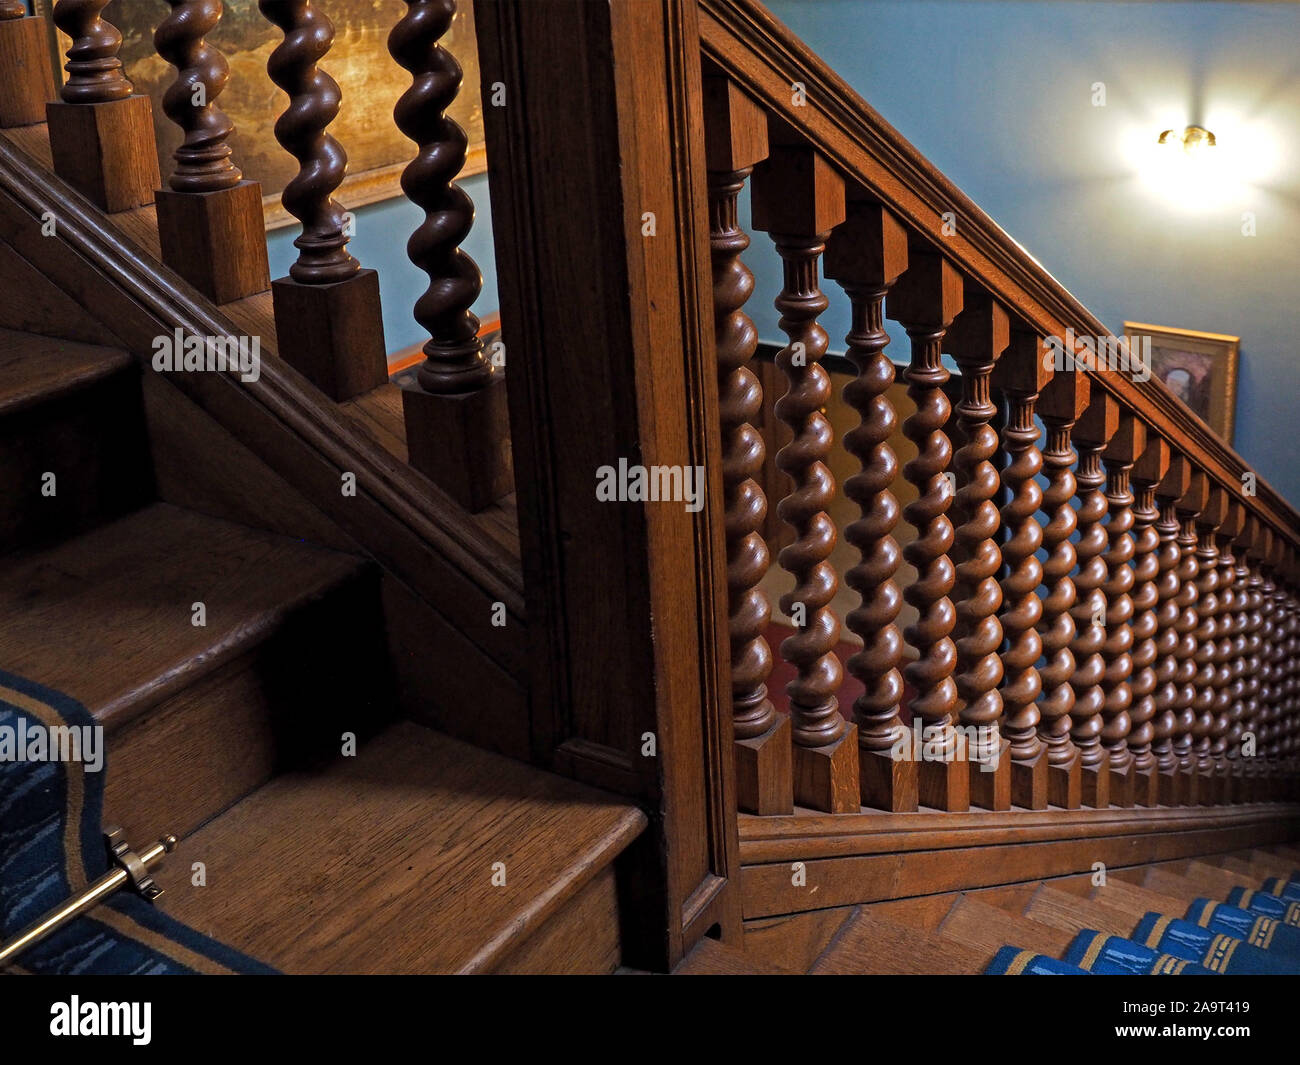 Escalera de madera maciza tono roble oscuro de 41x118cm